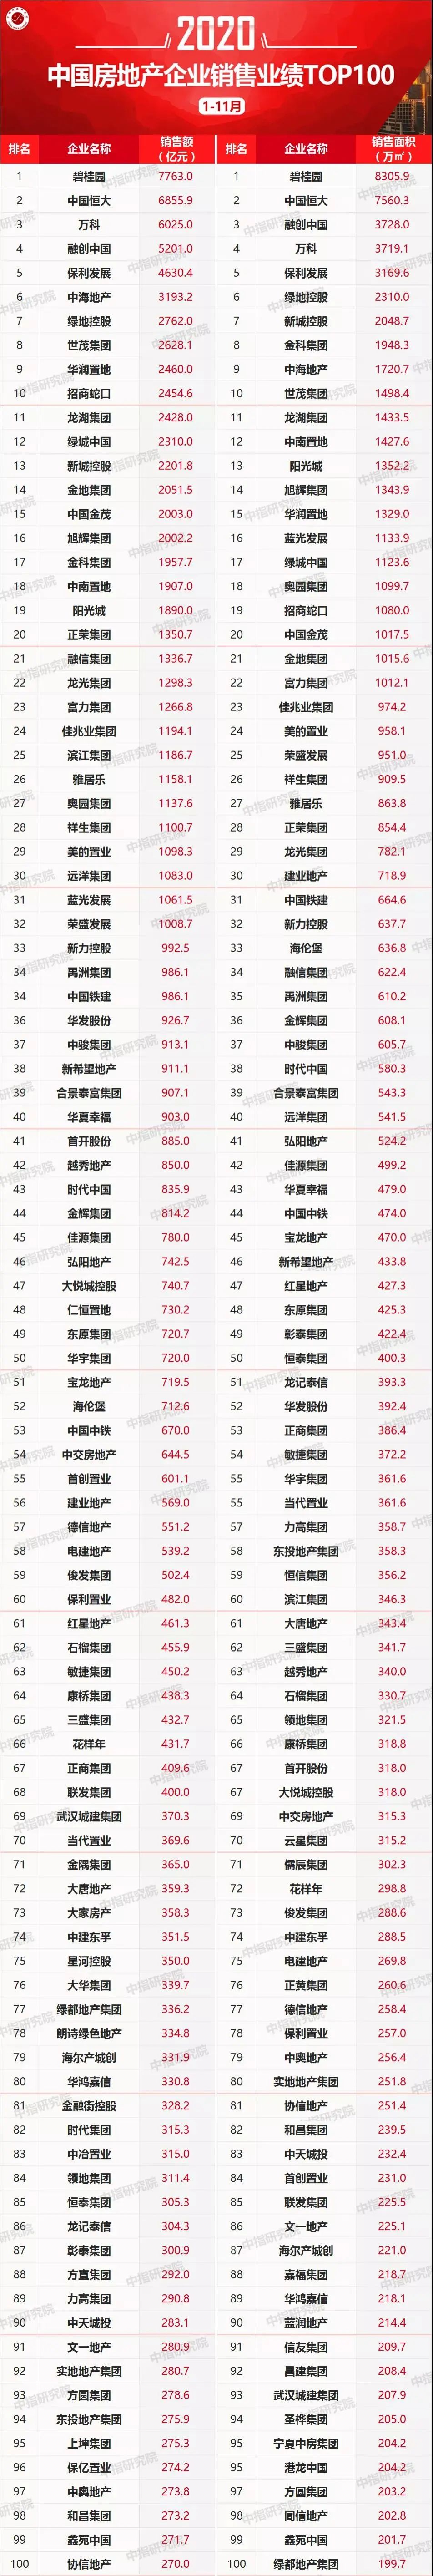 新鲜出炉!2020年1-11月中国房地产企业销售排行榜!